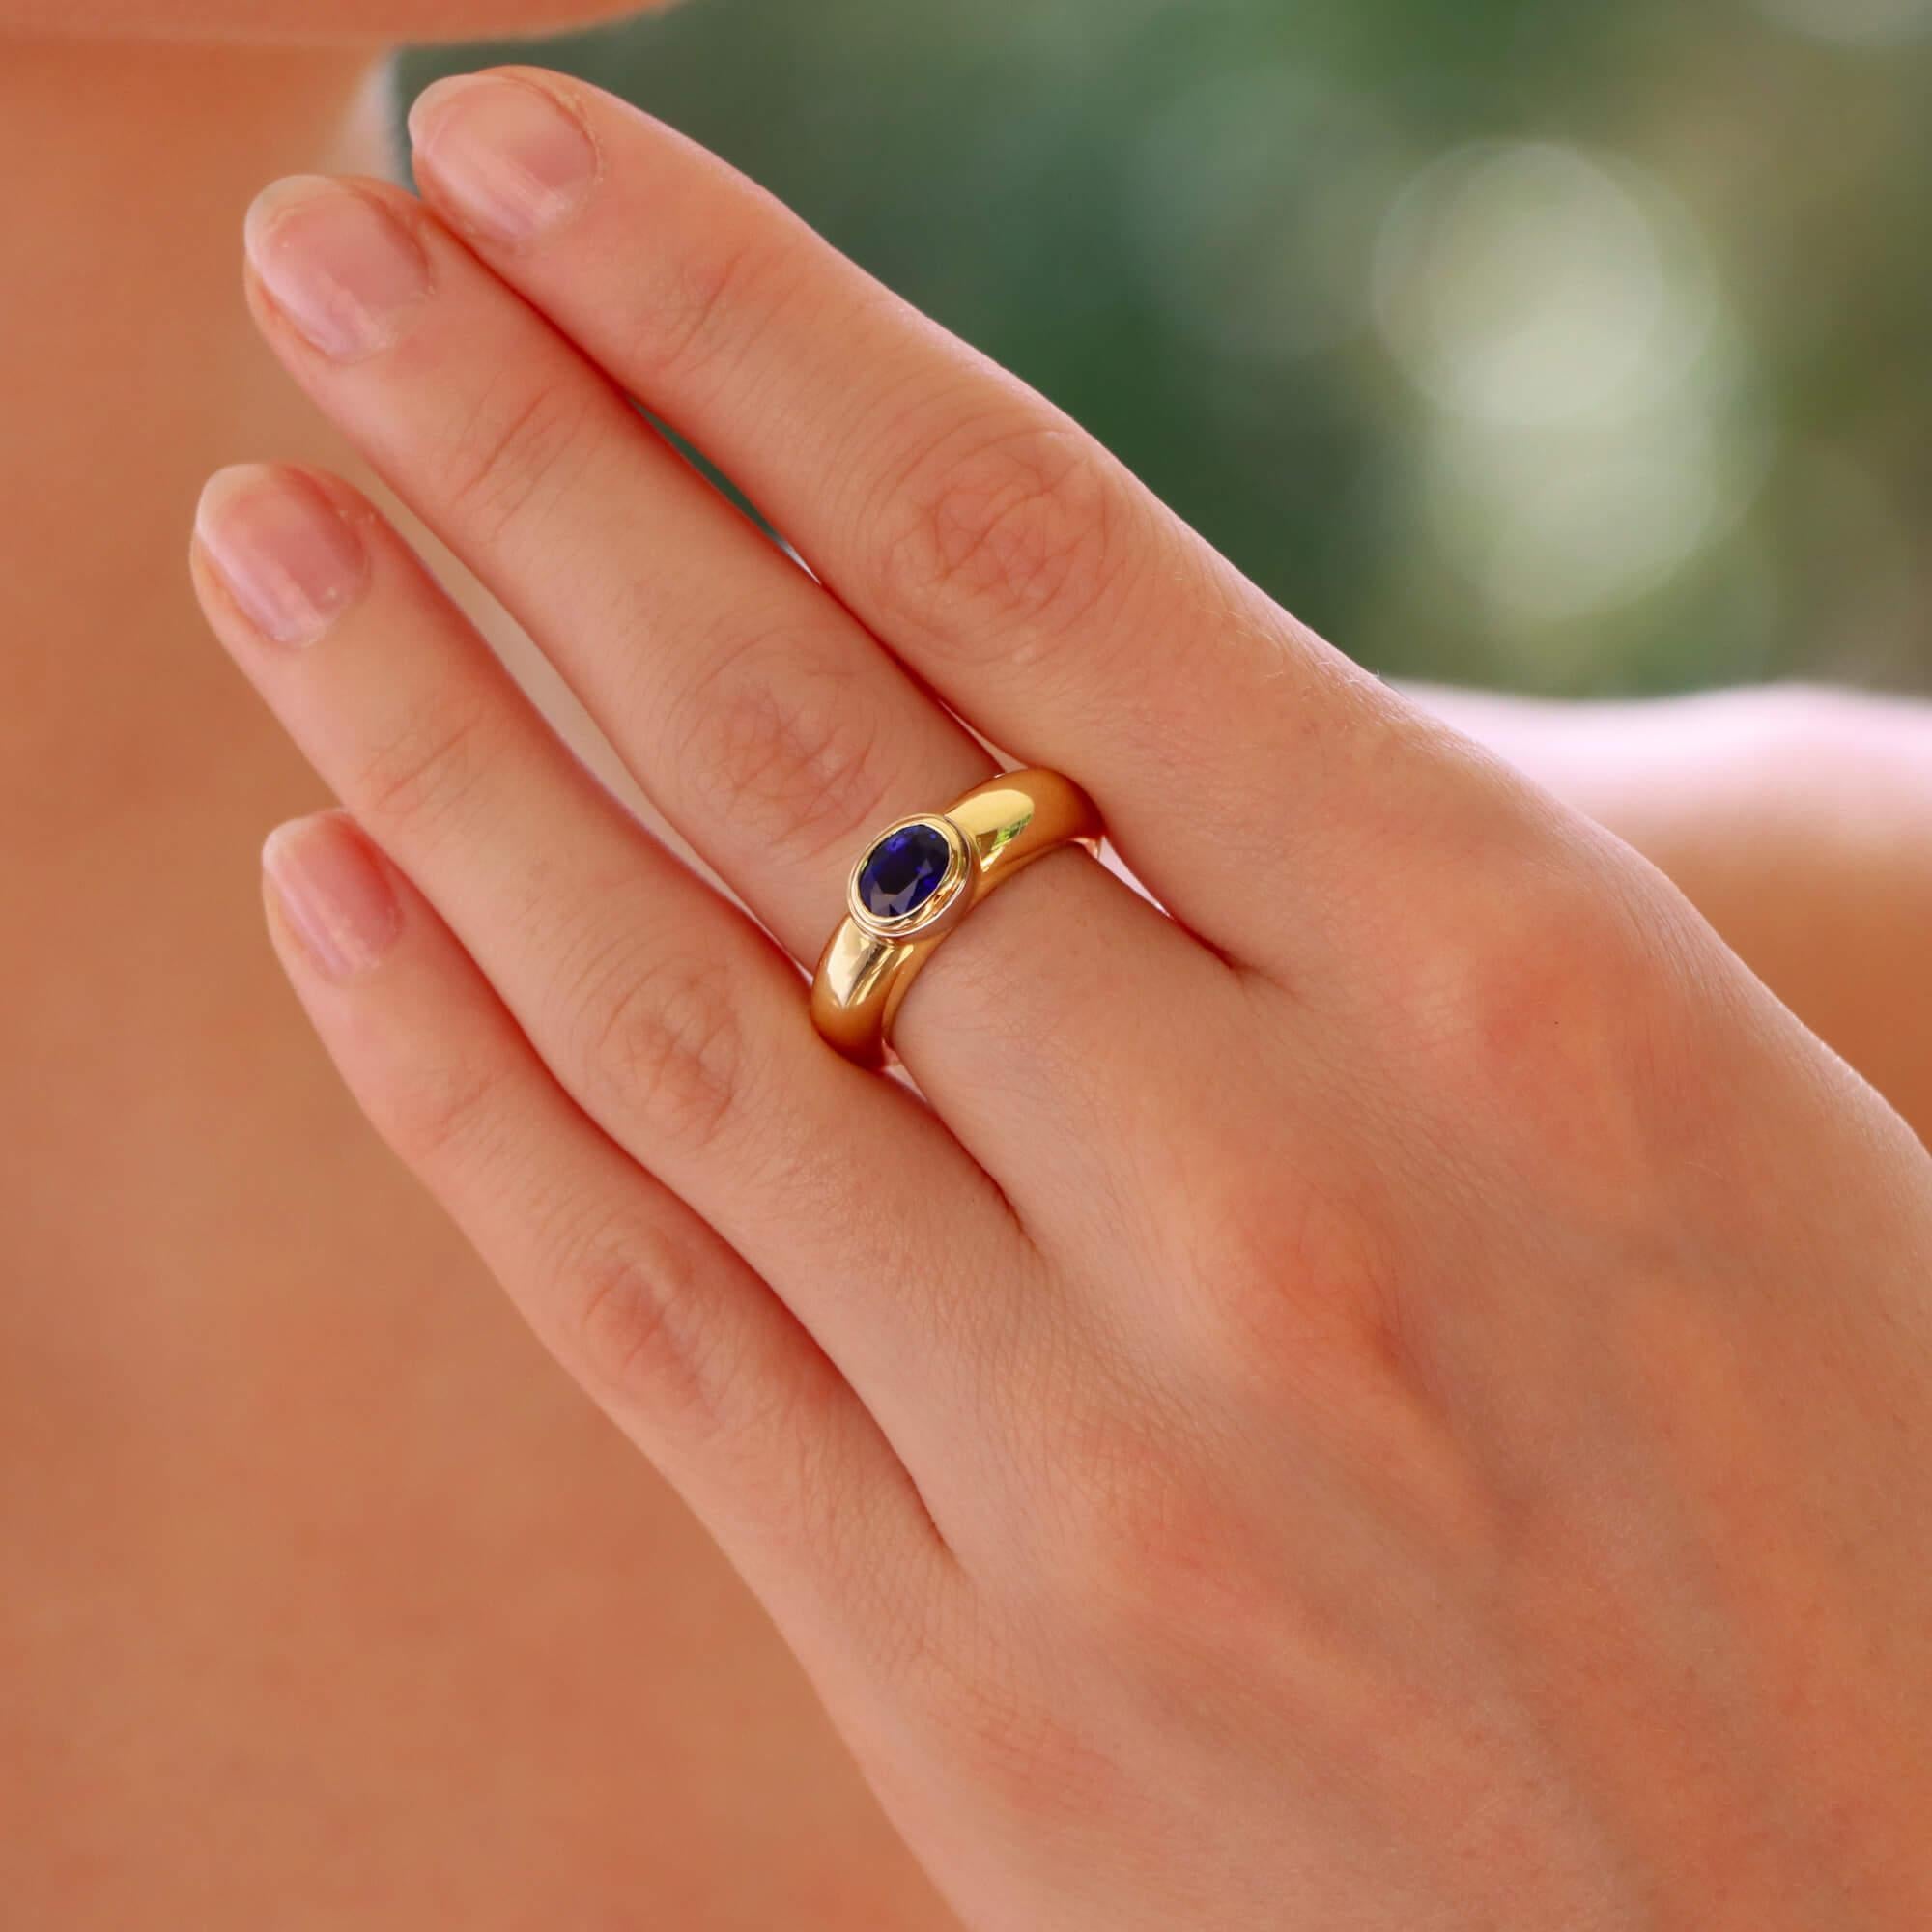 Eine stilvolle Vintage Garrard & Co. blauen Saphir Zigeuner Set chunky Ring in 18k Gelb- und Weißgold.

Der Ring ist ausschließlich mit einem ovalen, facettierten blauen Saphir besetzt, der sicher in ein klobiges Band eingefasst ist. Die Fassung des